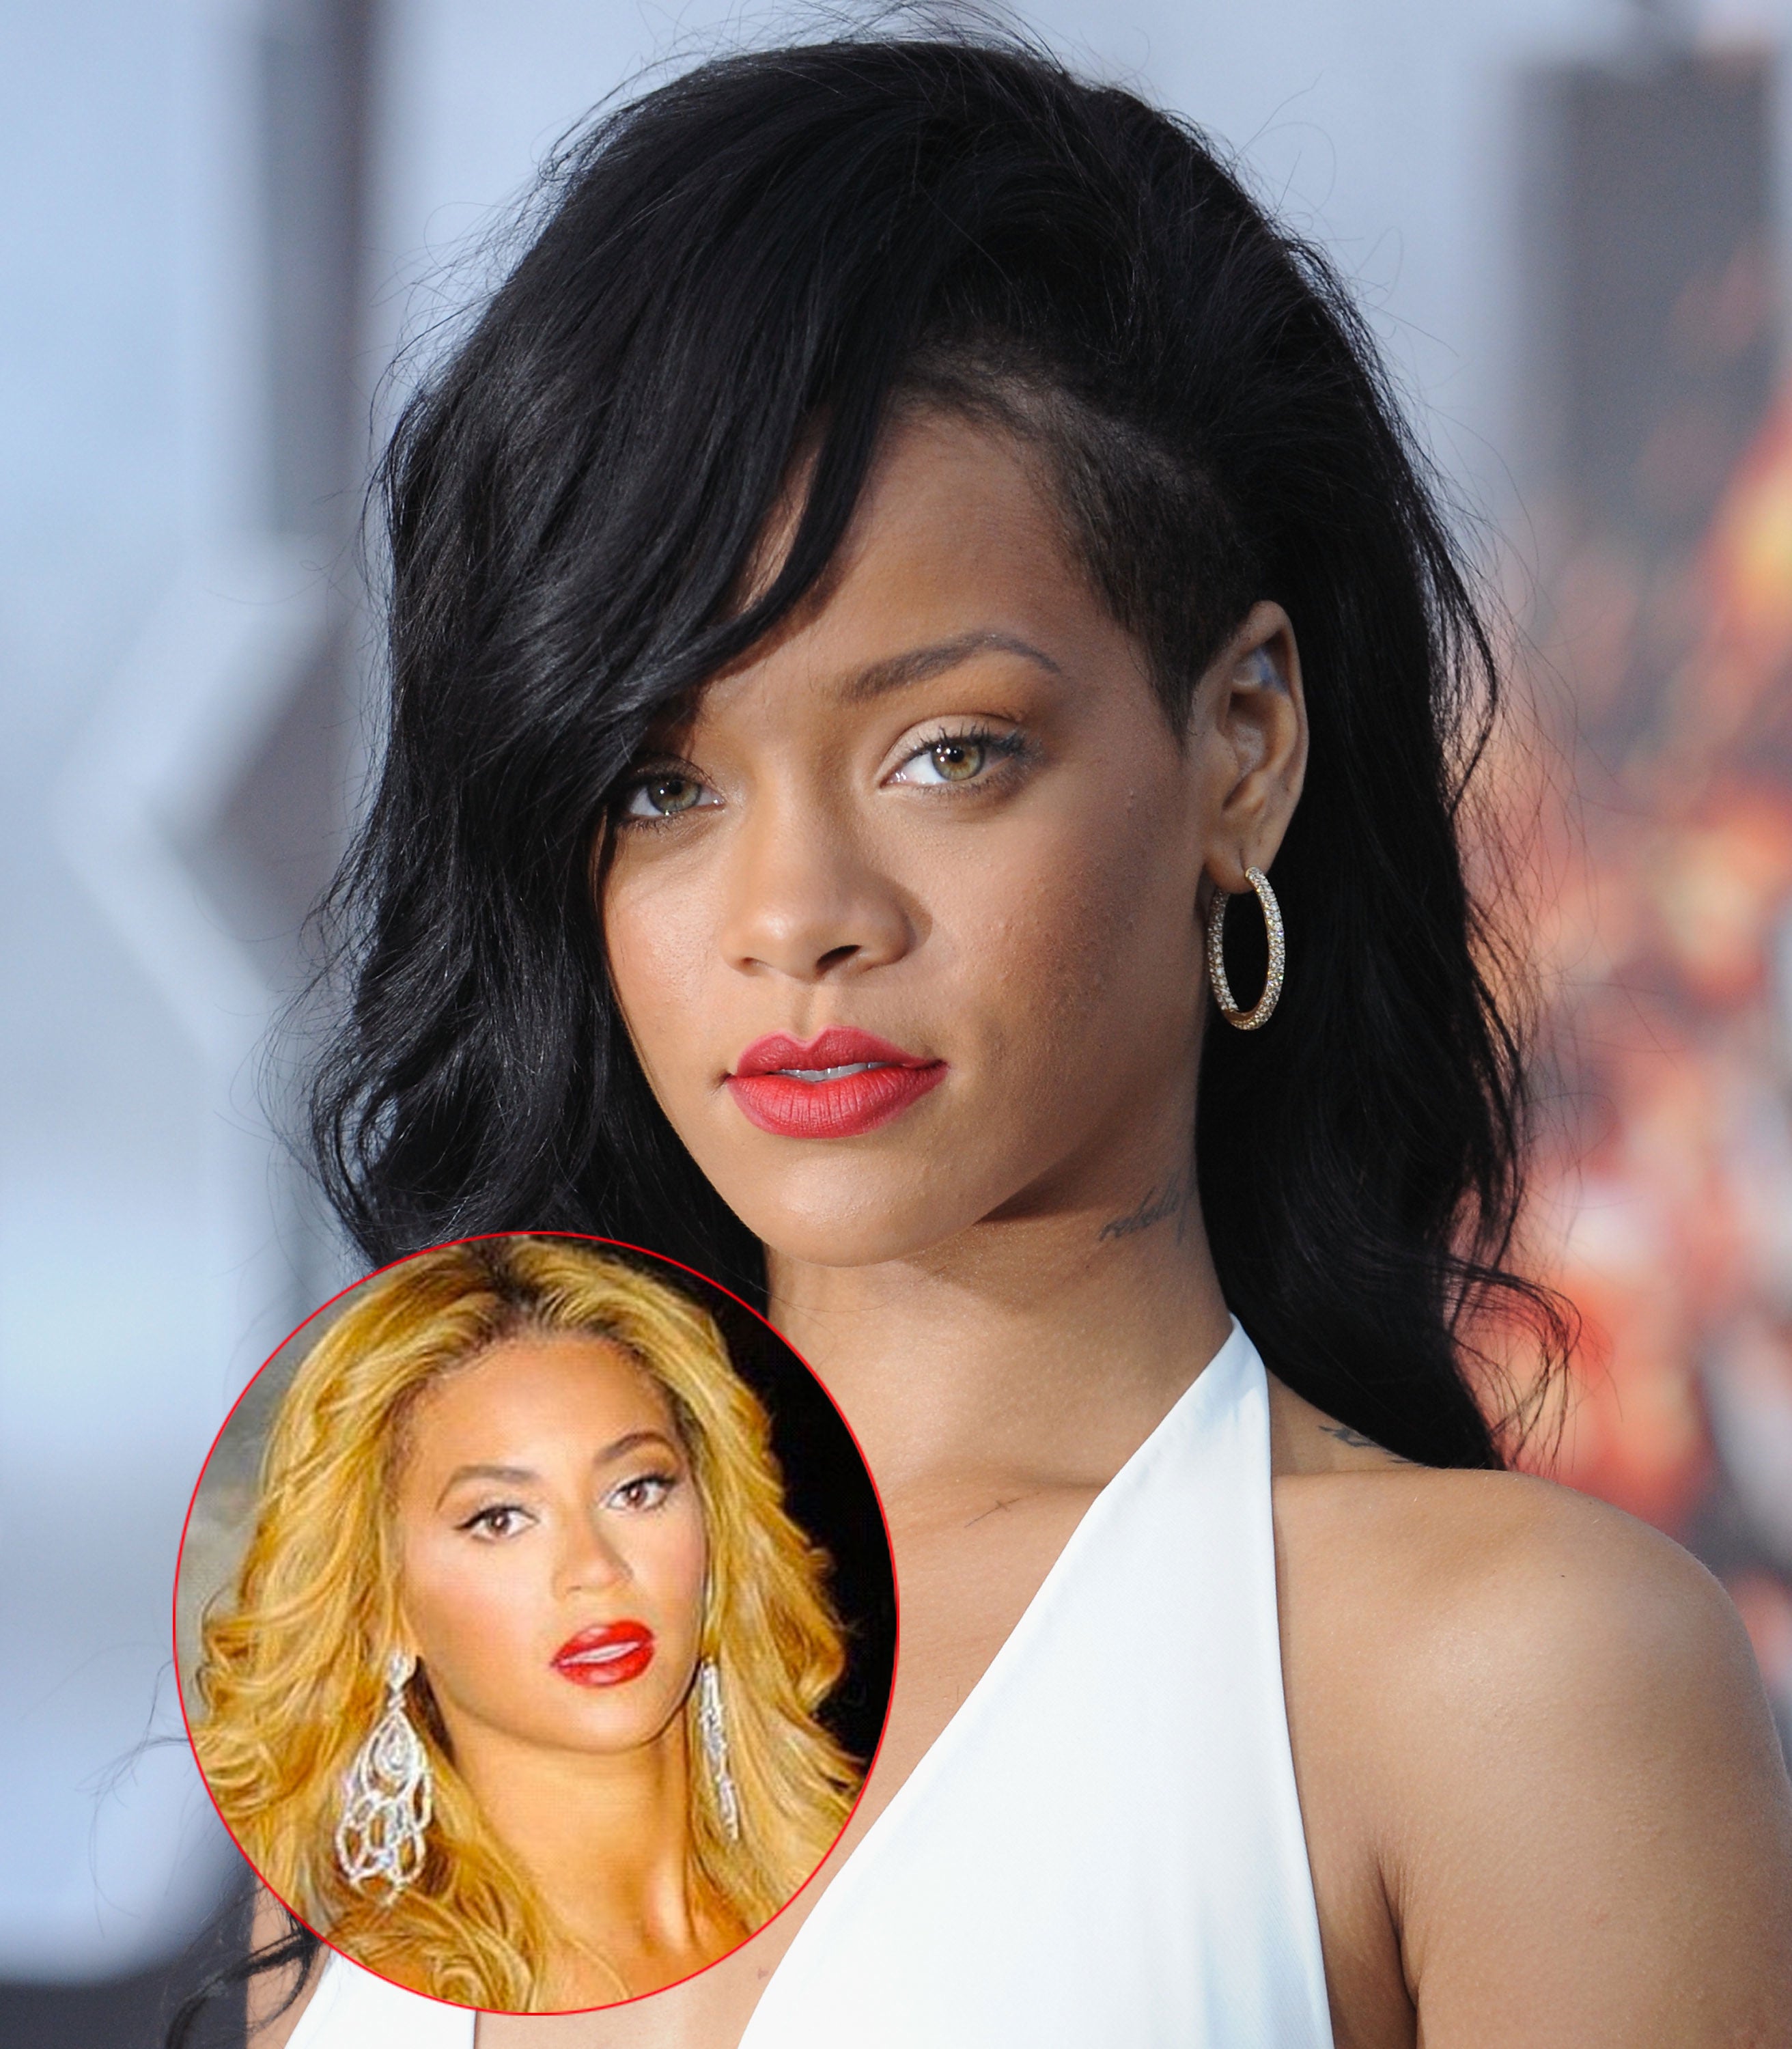 Rihanna Shares Girl Crush on Beyonce